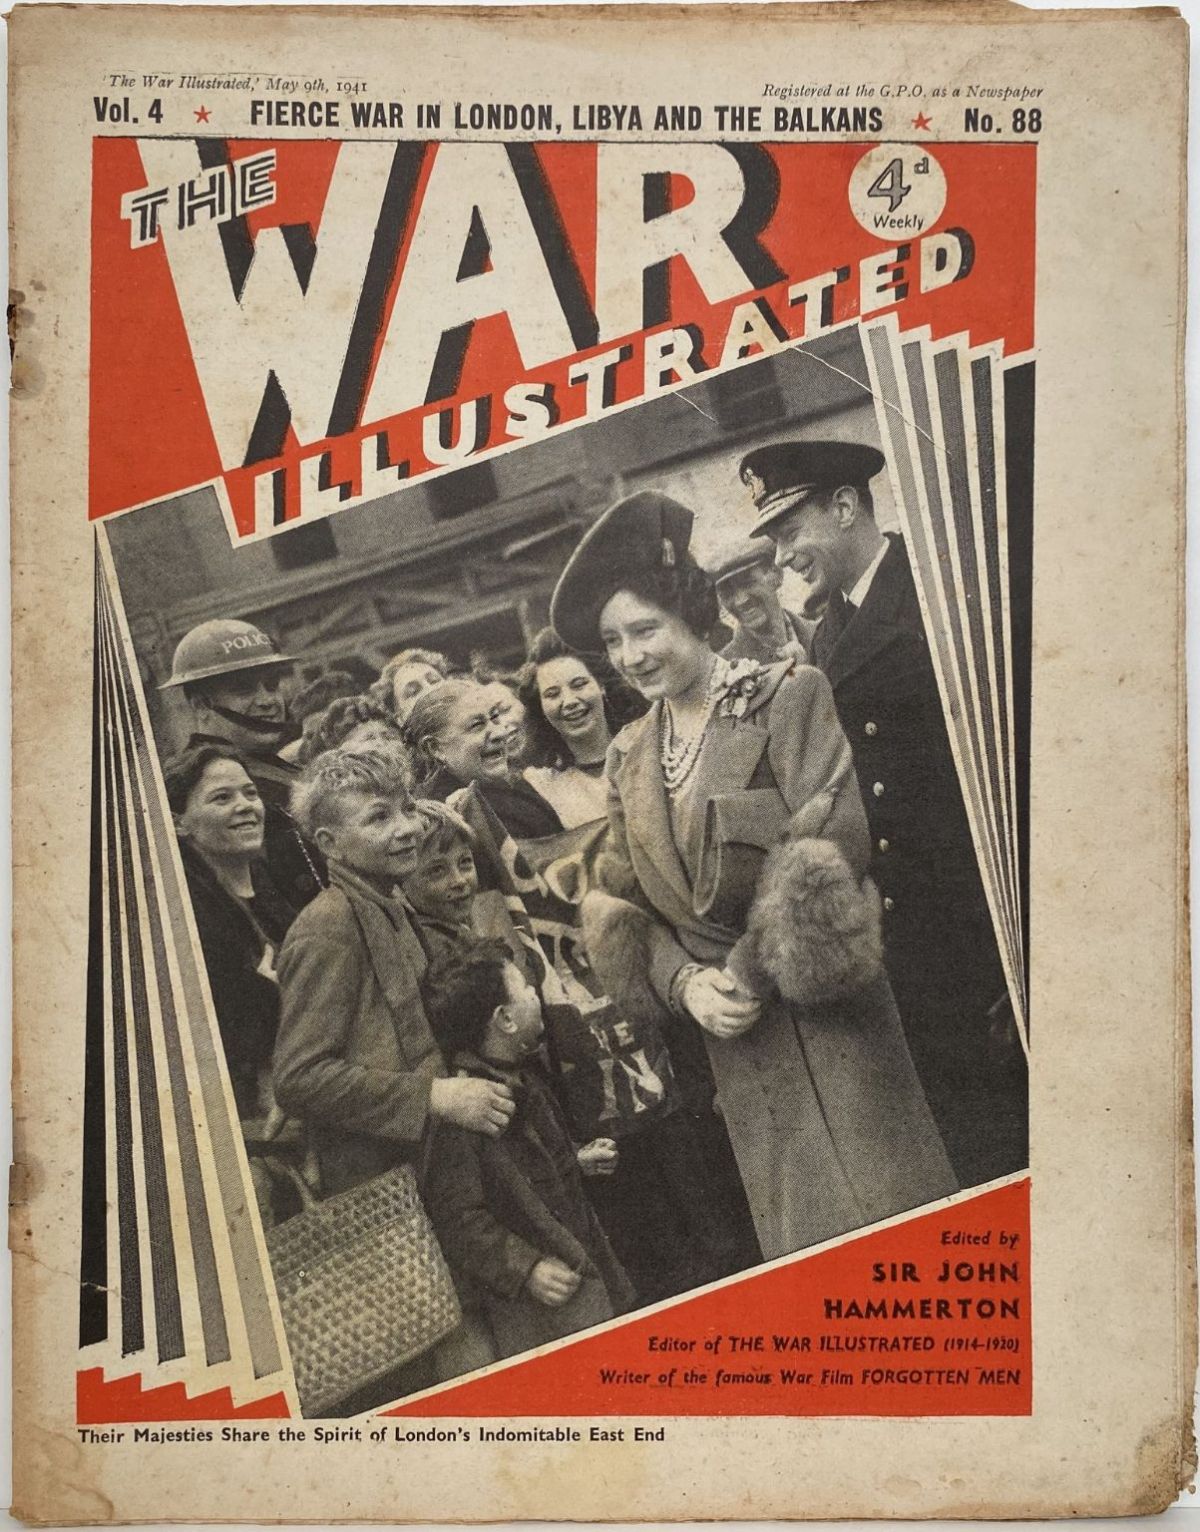 THE WAR ILLUSTRATED - Vol 4, No 88, 9th May 1941